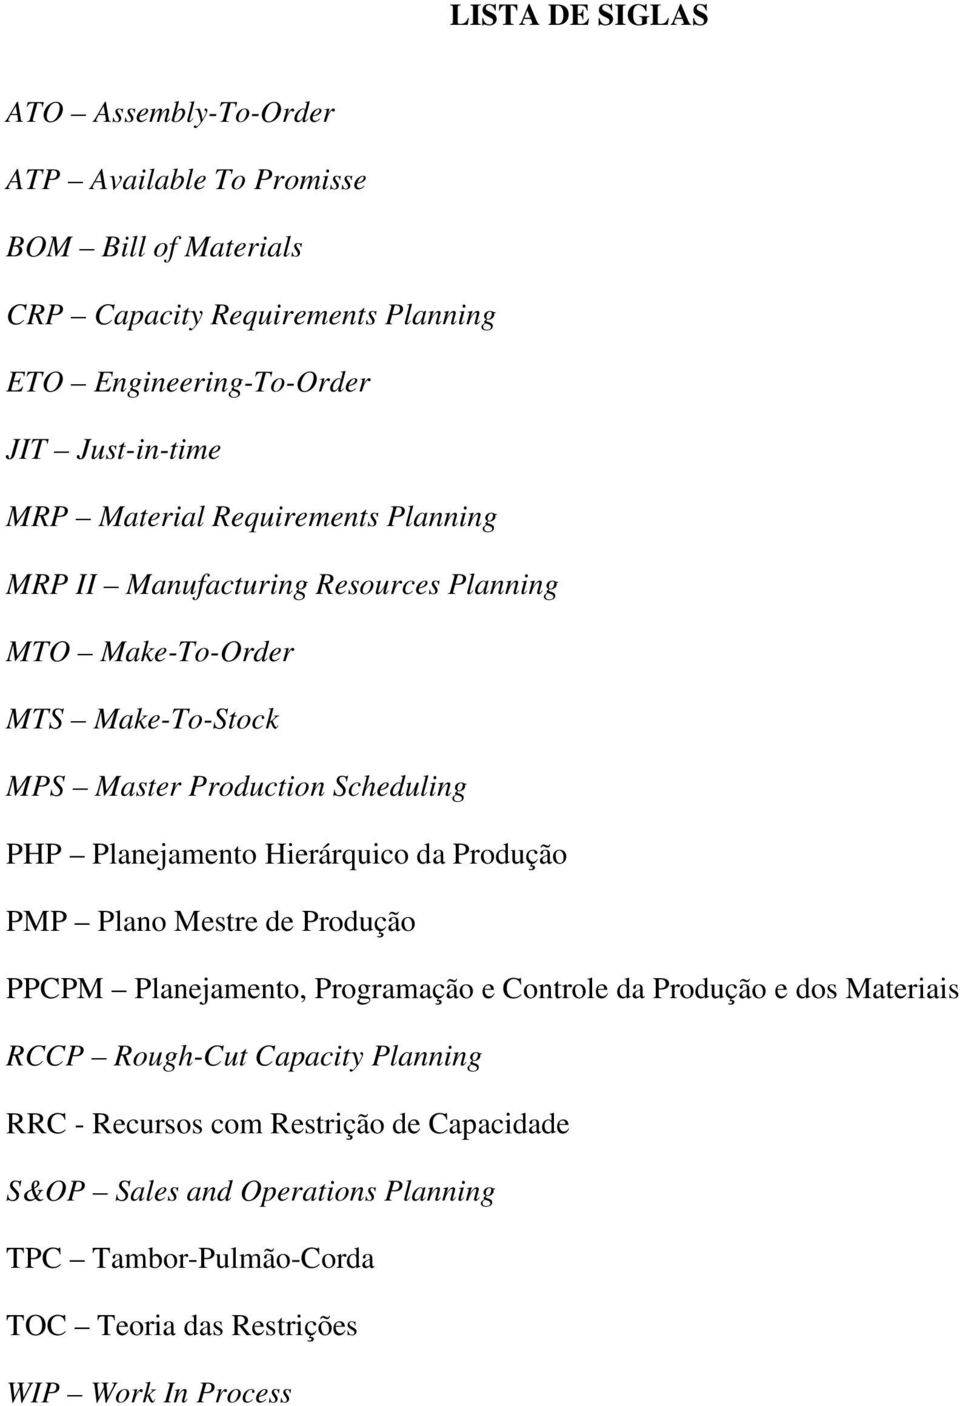 PHP Planejamento Hierárquico da Produção PMP Plano Mestre de Produção PPCPM Planejamento, Programação e Controle da Produção e dos Materiais RCCP Rough-Cut